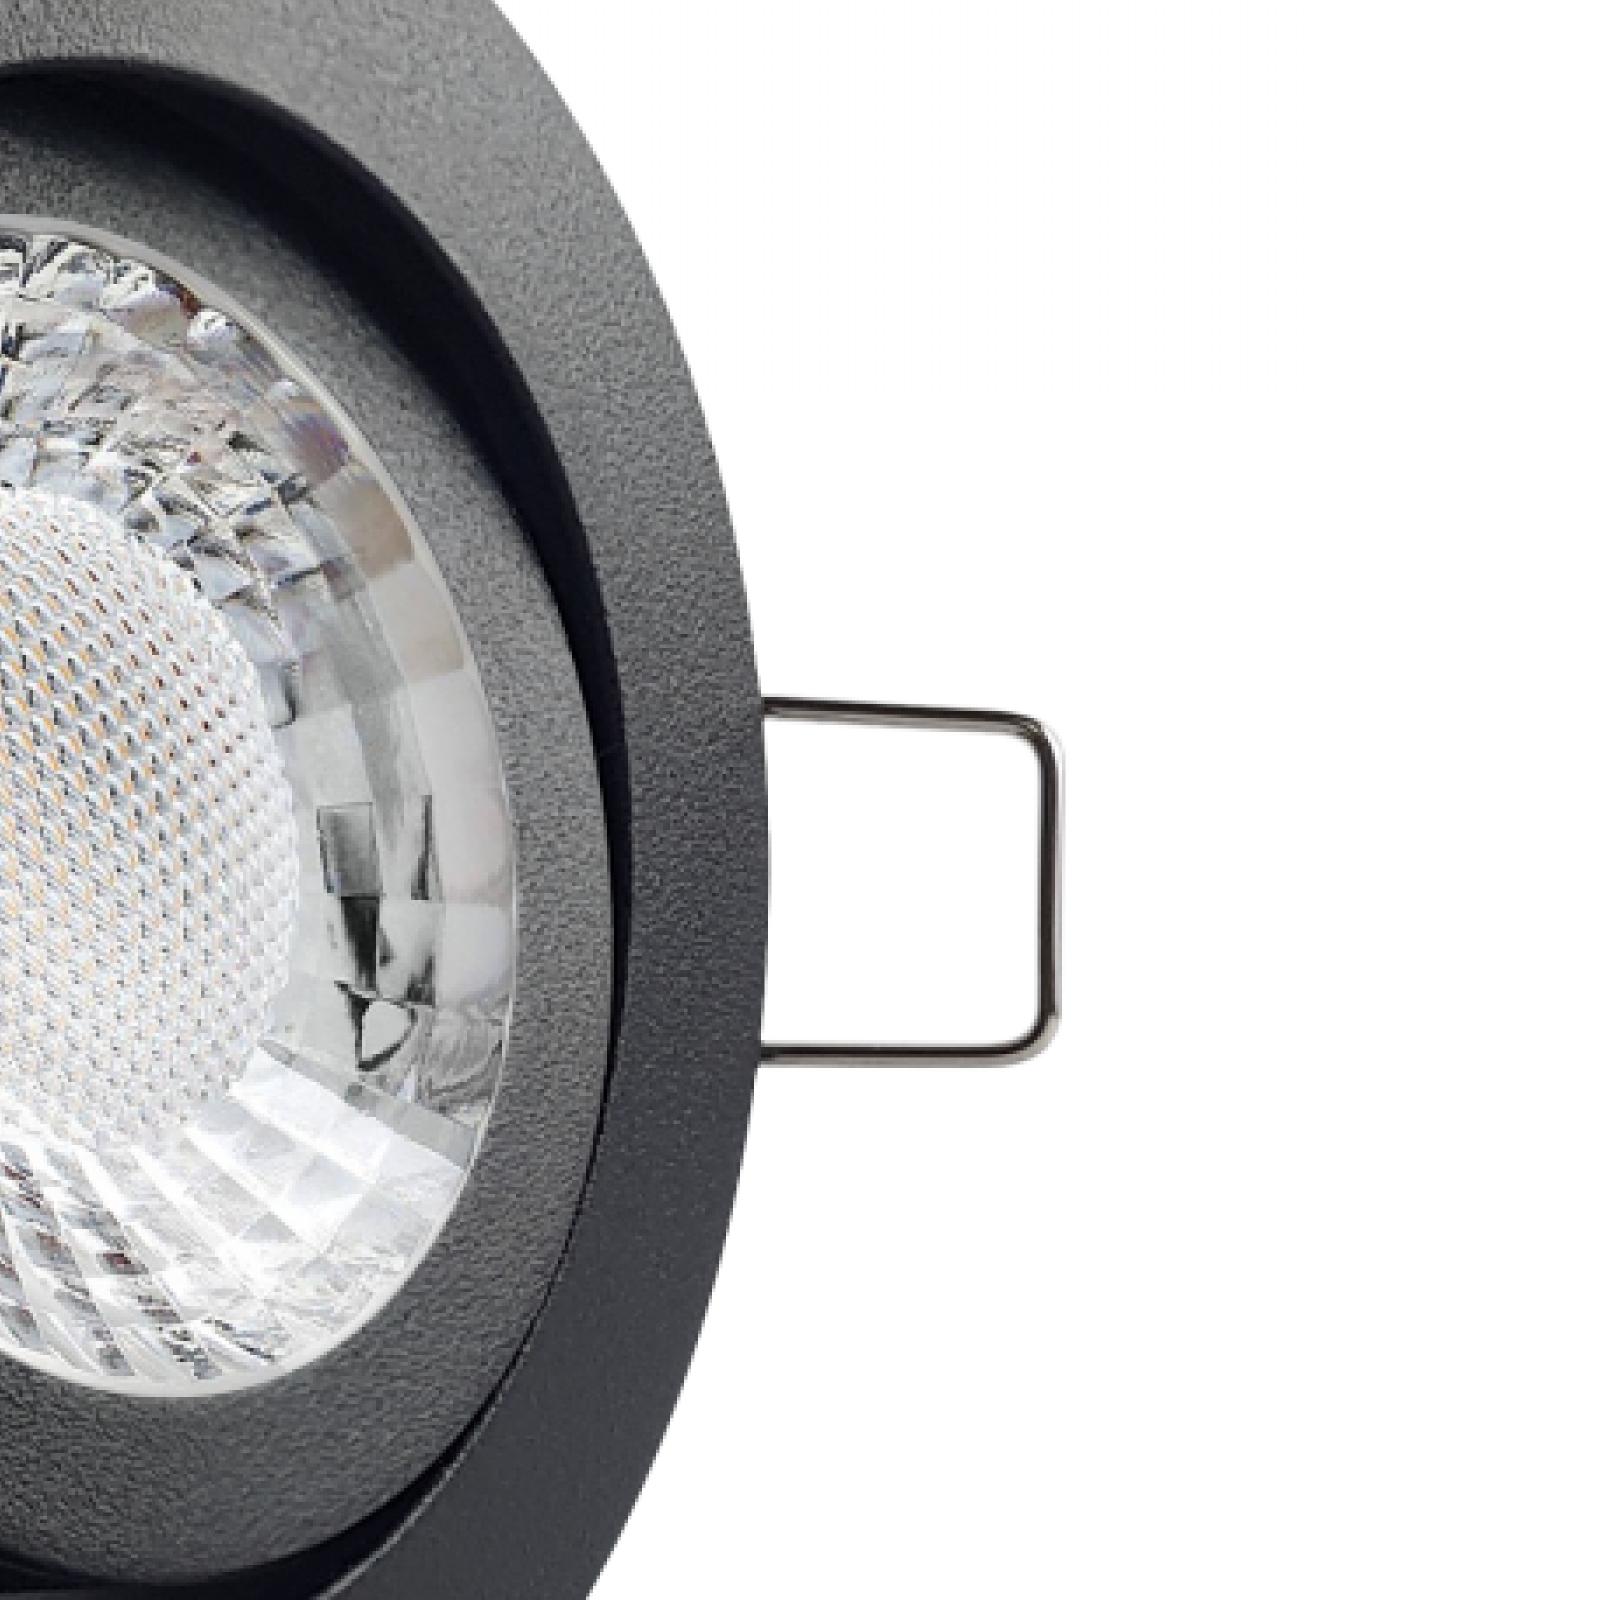 LED Einbaustrahler schwarz pulverbeschichtet | Runder Einbauspot | 360° schwenkbar | Lochmaß Ø 68mm - 75mm | Einbautiefe 64mm | Anschlussfertig mit GU10 230V Fassung 